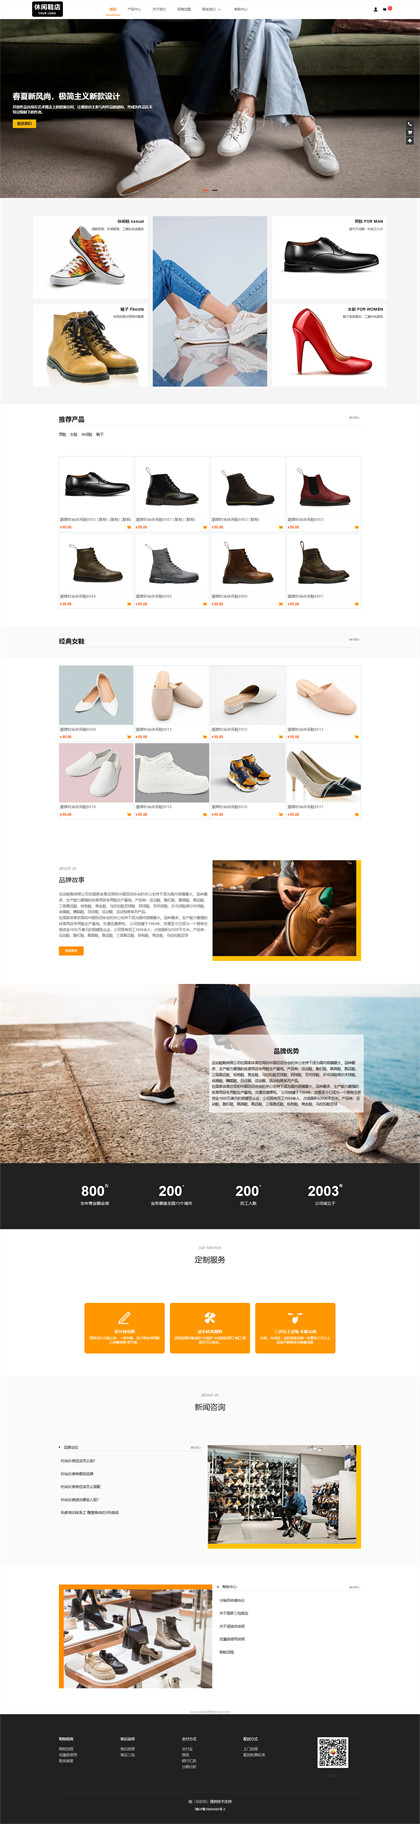 时尚休闲鞋-品牌运动鞋-品牌男鞋-品牌女鞋-鞋业企业商城网站模板网站模板图片